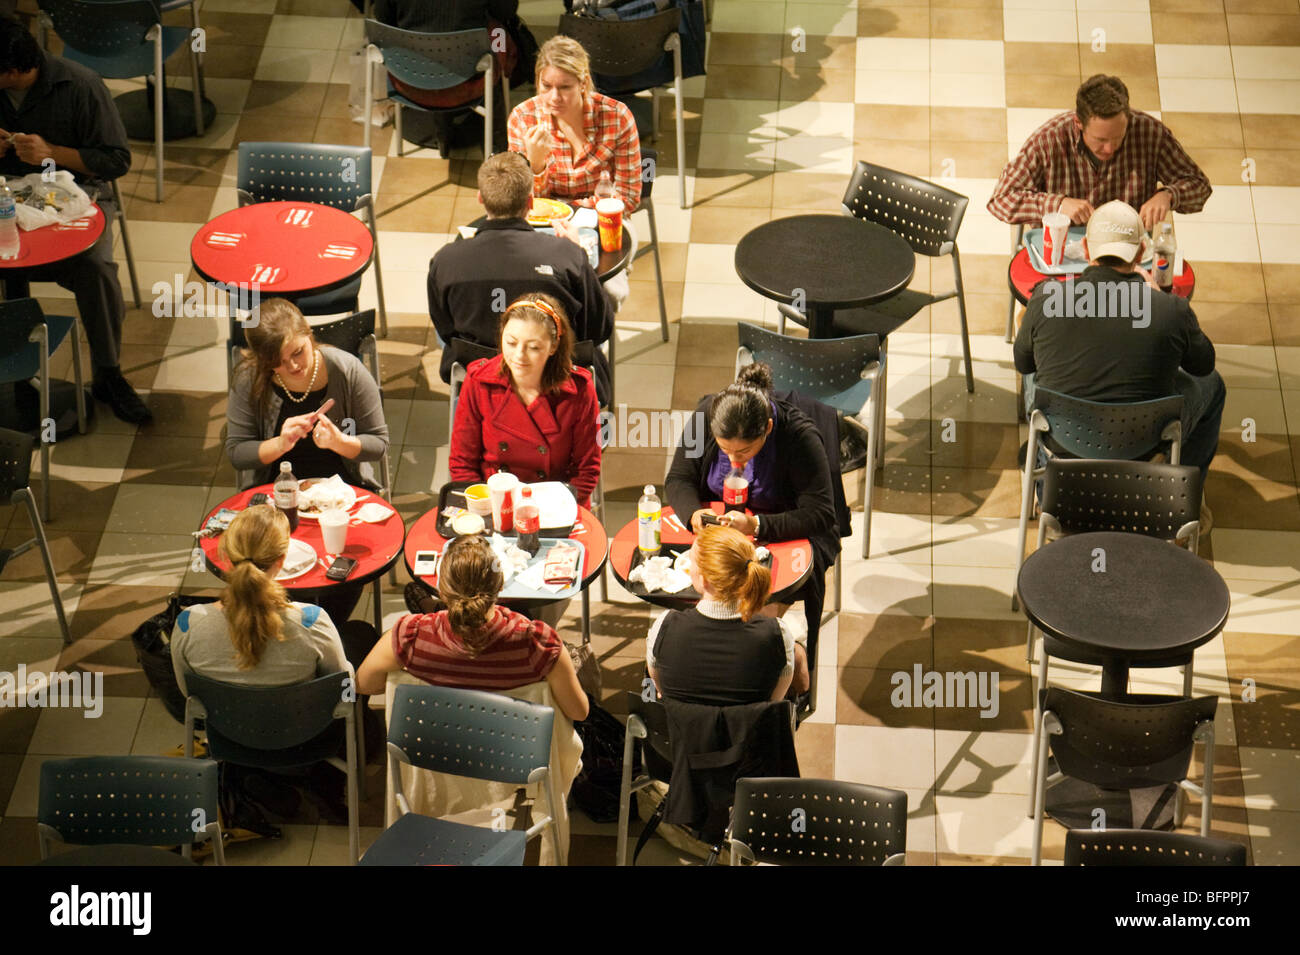 Menschen Essen in einem Café, Union Station Shopping Mall, Washington DC USA Stockfoto